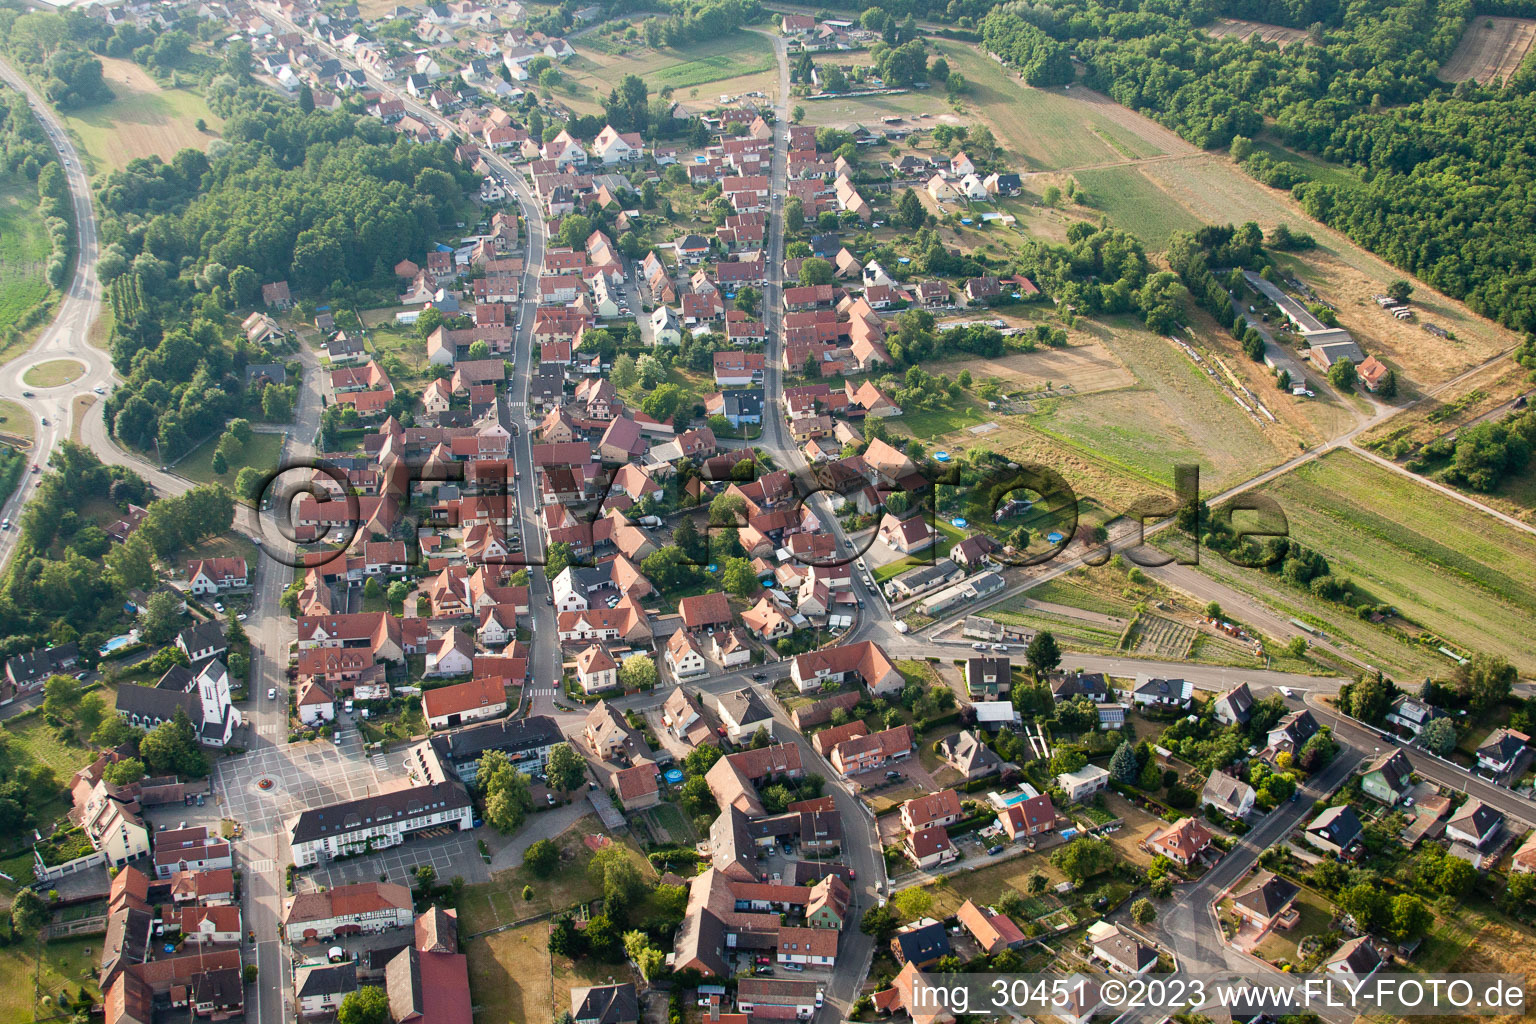 Oberhoffen-sur-Moder dans le département Bas Rhin, France vue d'en haut